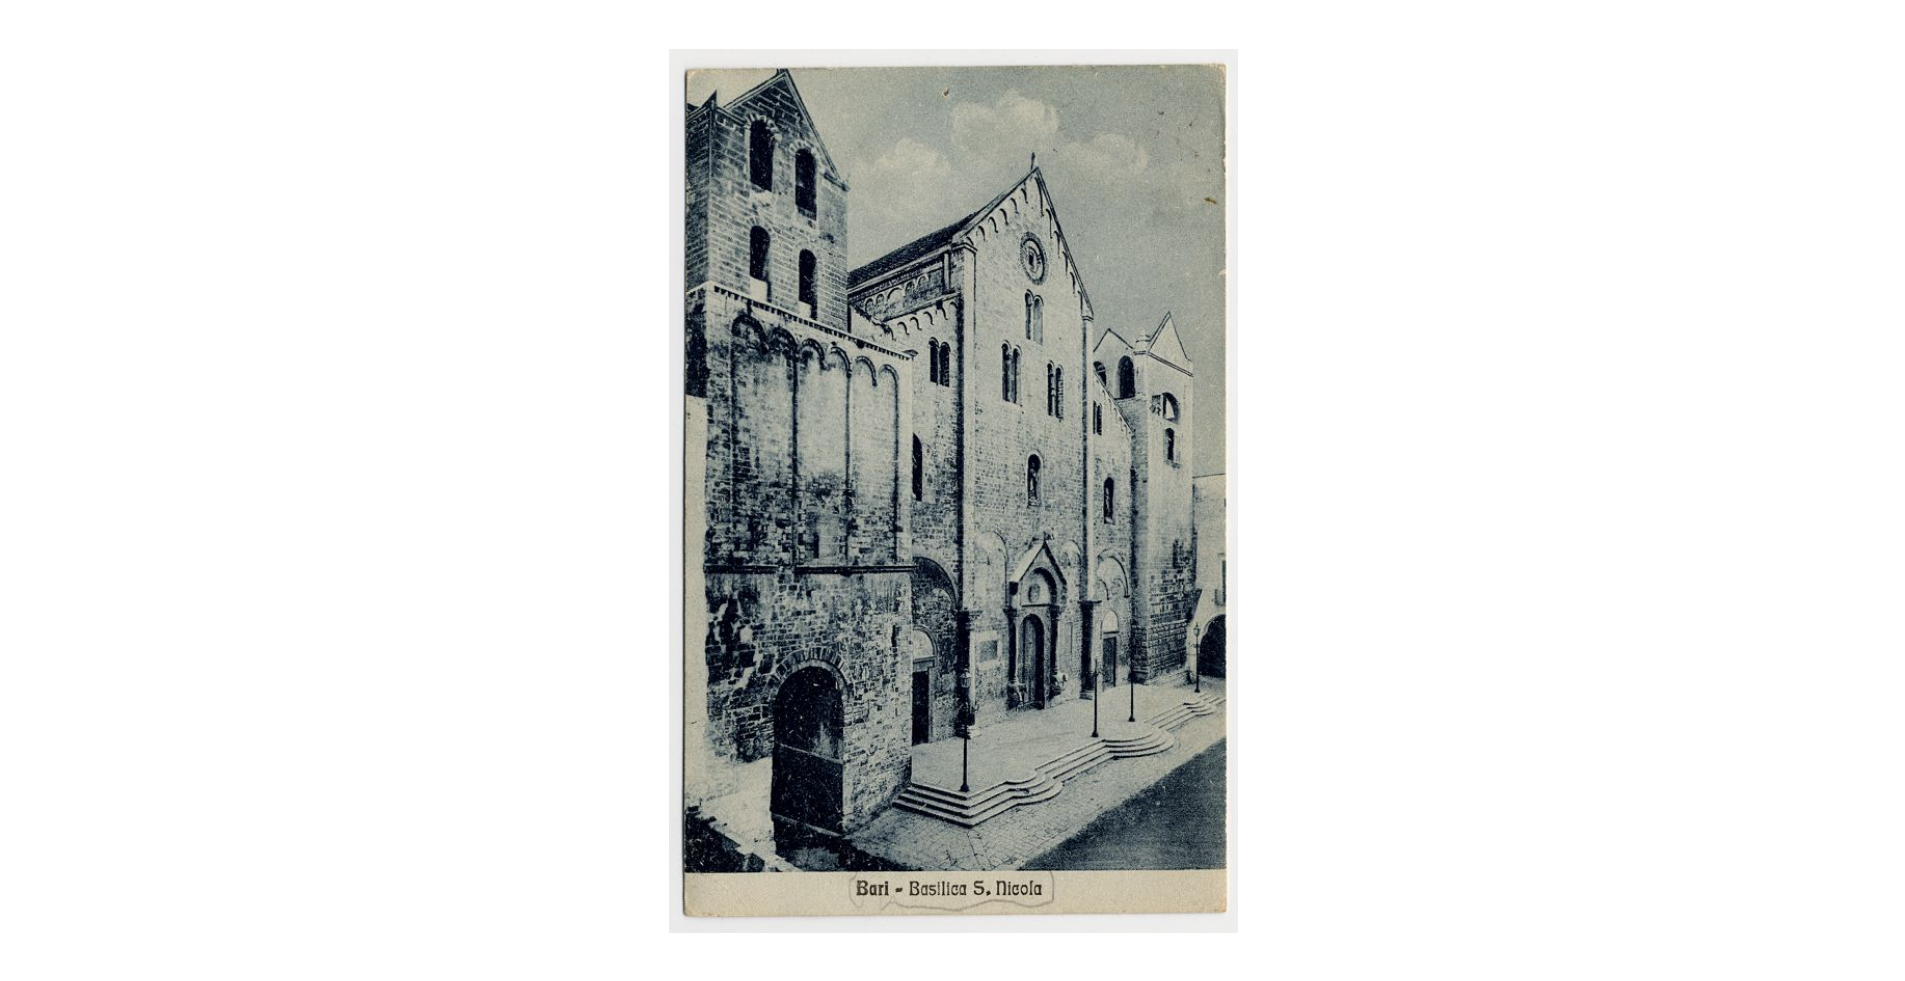 Fotografo non identificato, Bari - Basilica di S. Nicola di Bari, 1926, cartolina, FFC013991